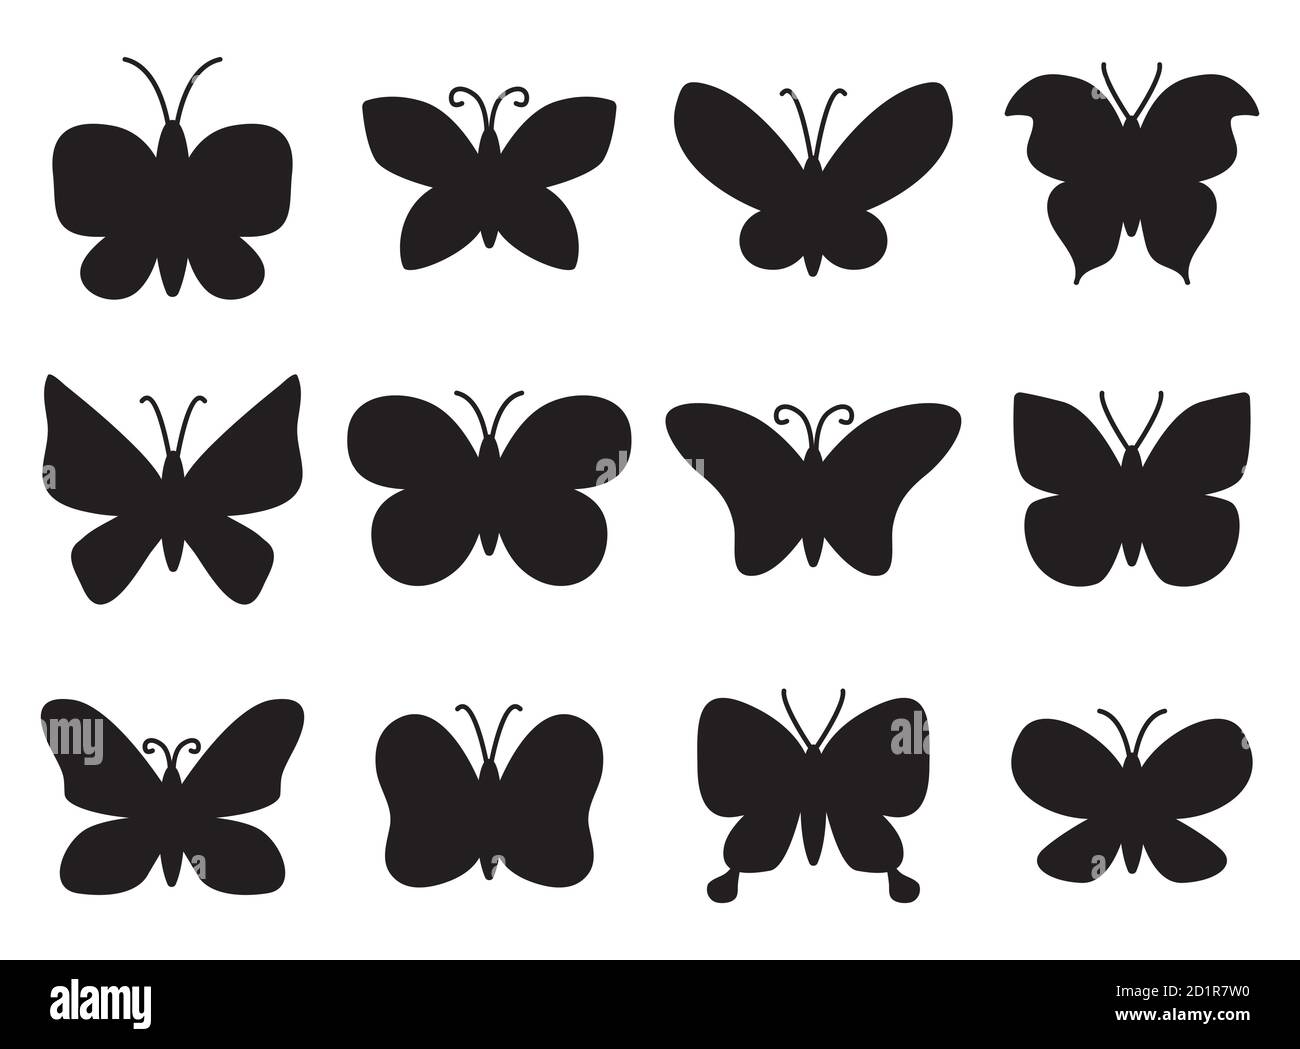 Ensemble de silhouettes papillons dessinées à la main. Peut être utilisé comme éléments de conception pour les imprimés de fille d'enfants, les éléments d'arrière-plan fantaisie, la décoration d'esquisse de tatouage. Illustration de Vecteur